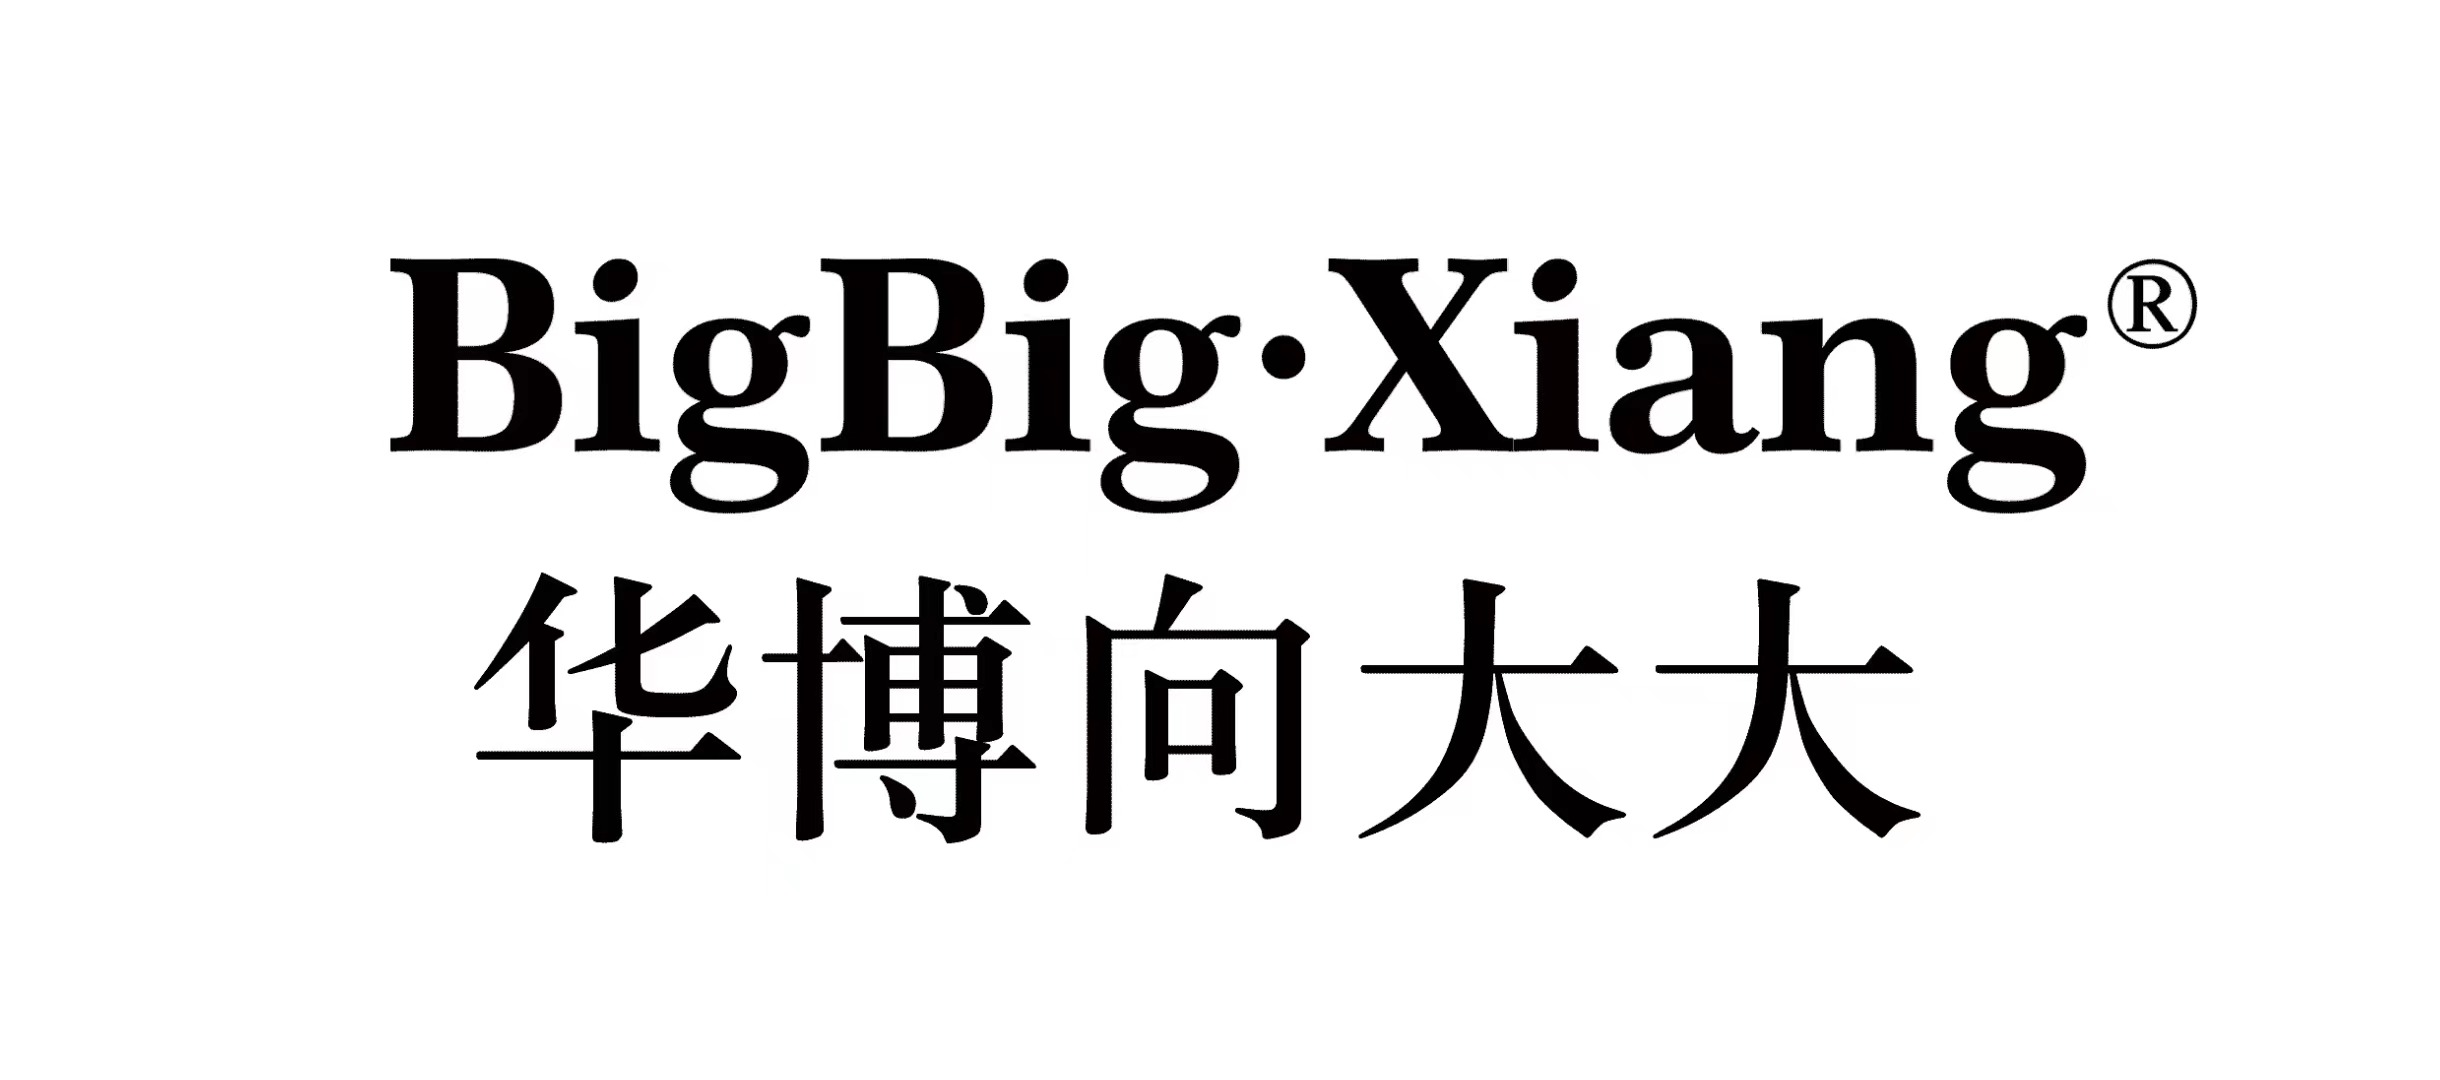 Xiamen Huabo Bigbigxiang Network Technology Group